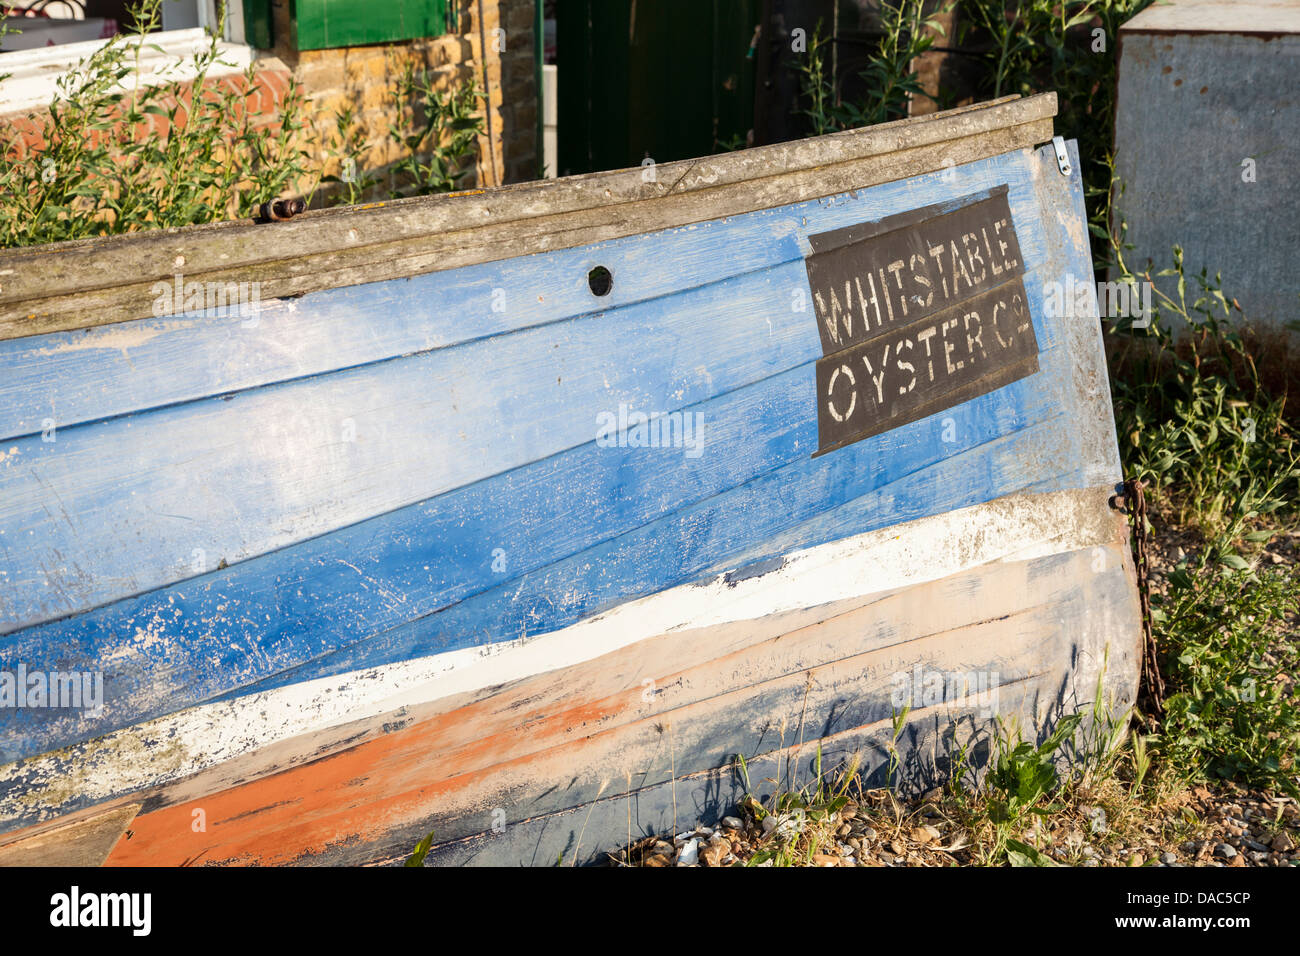 Boot mit Whitstable Oyster unterzeichnen, blaues und rotes altes Boot im Vordergrund Stockfoto